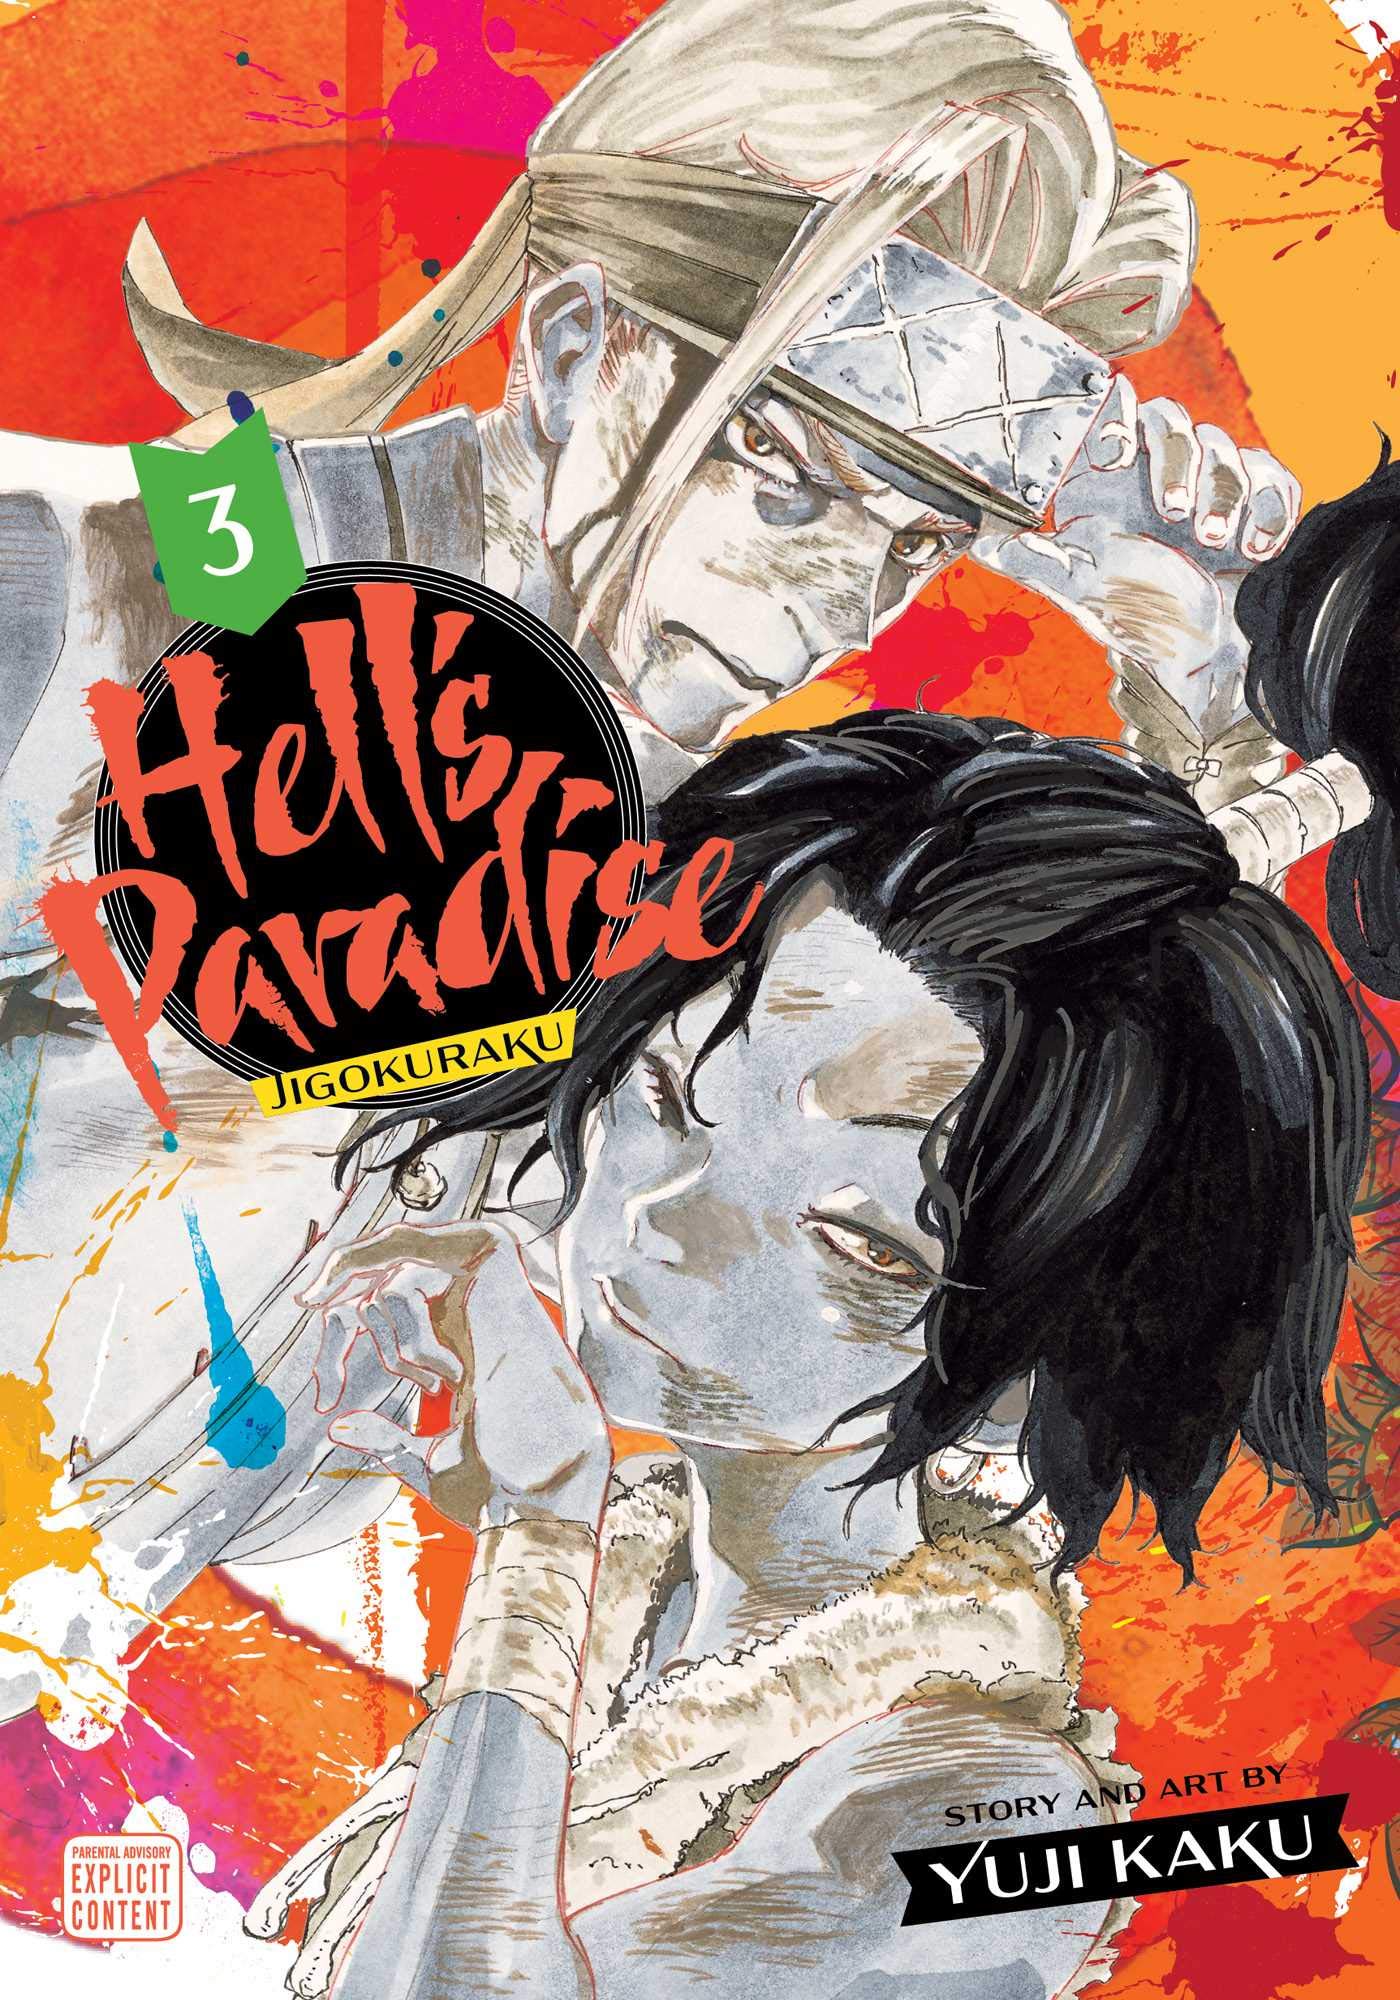 Yuji Kaku's Hell's Paradise: Jigokuraku Season 1 Send-off